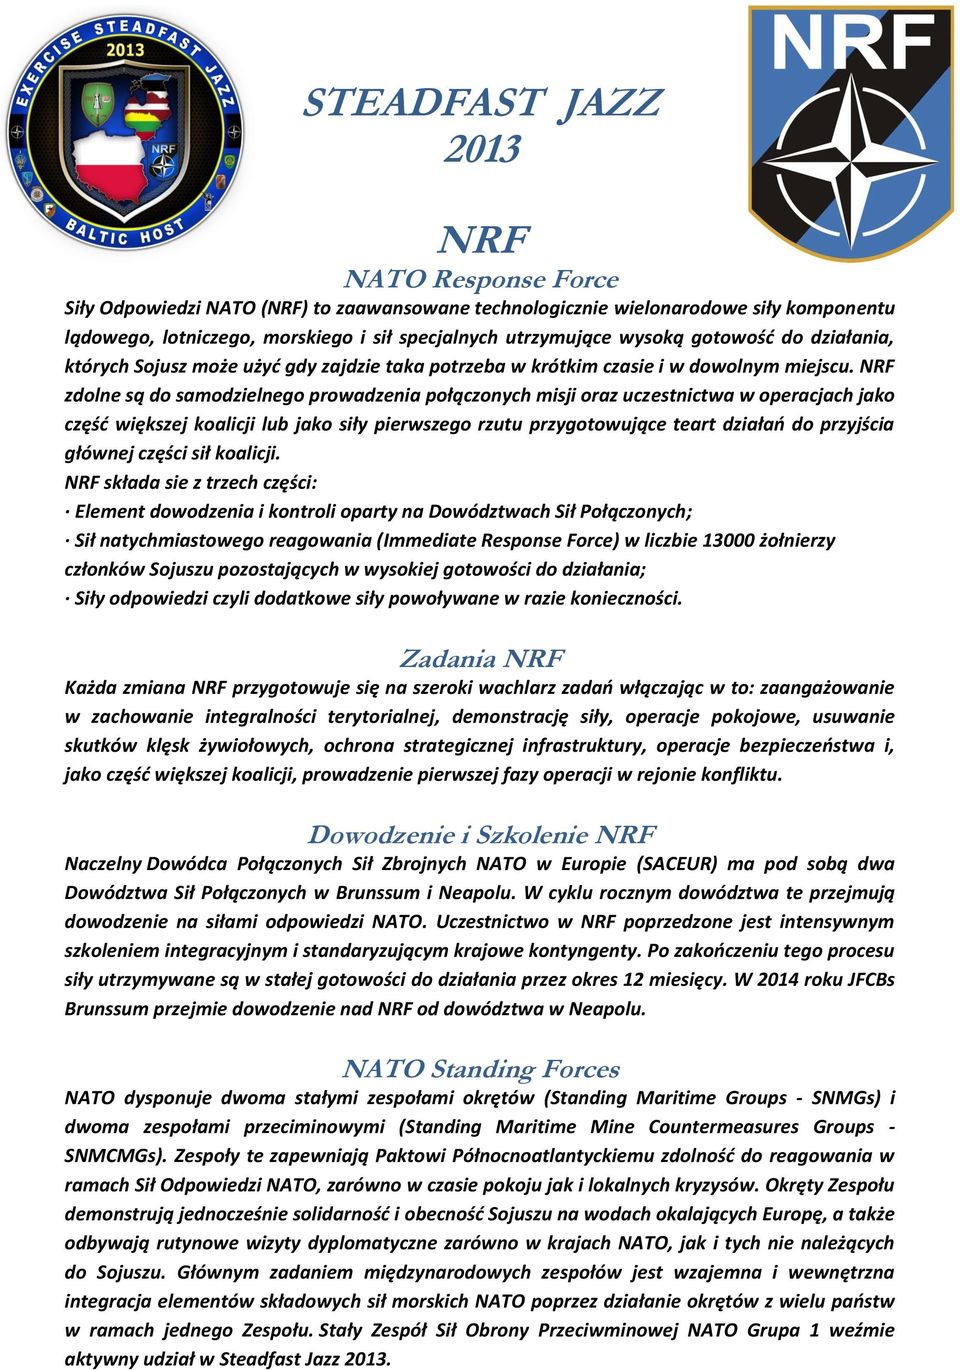 NRF zdolne są do samodzielnego prowadzenia połączonych misji oraz uczestnictwa w operacjach jako część większej koalicji lub jako siły pierwszego rzutu przygotowujące teart działań do przyjścia